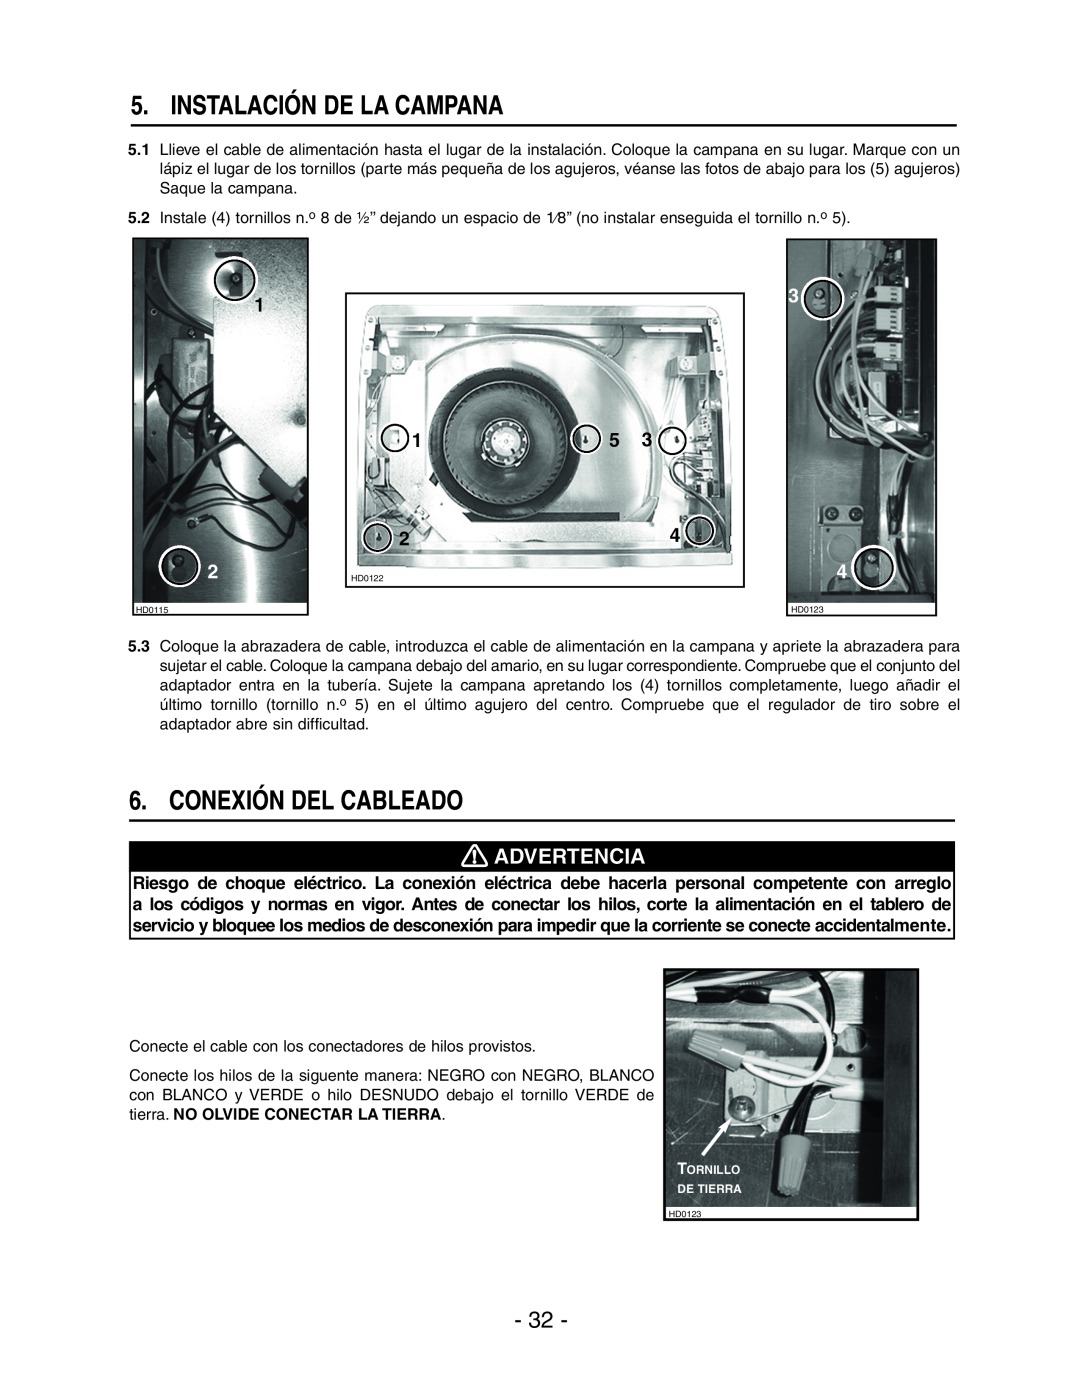 Broan E661 manual Instalación De La Campana, Conexión Del Cableado, Advertencia 